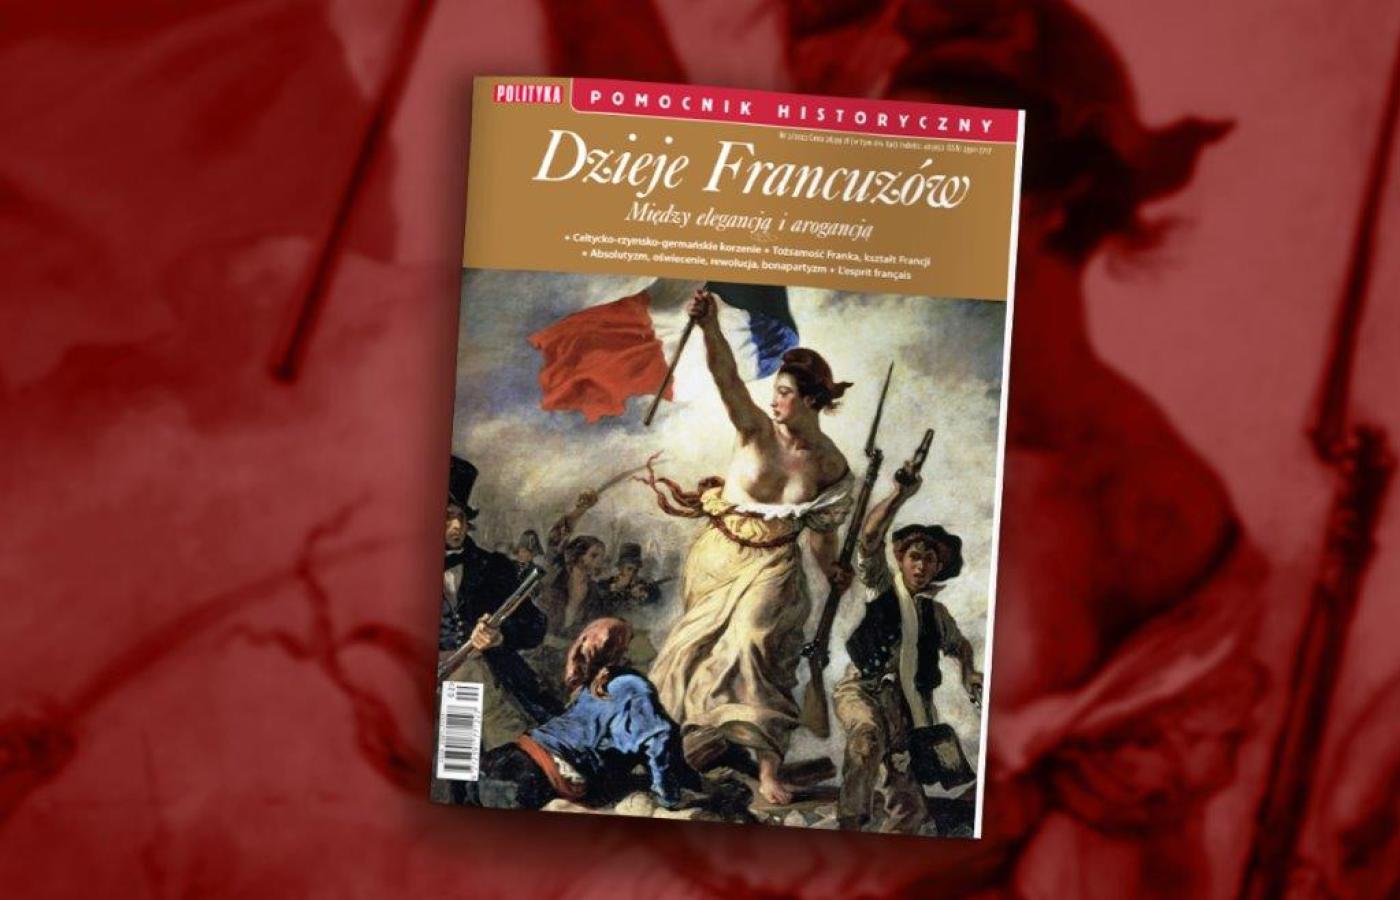 Pomocnik Historyczny „Dzieje Francuzów”